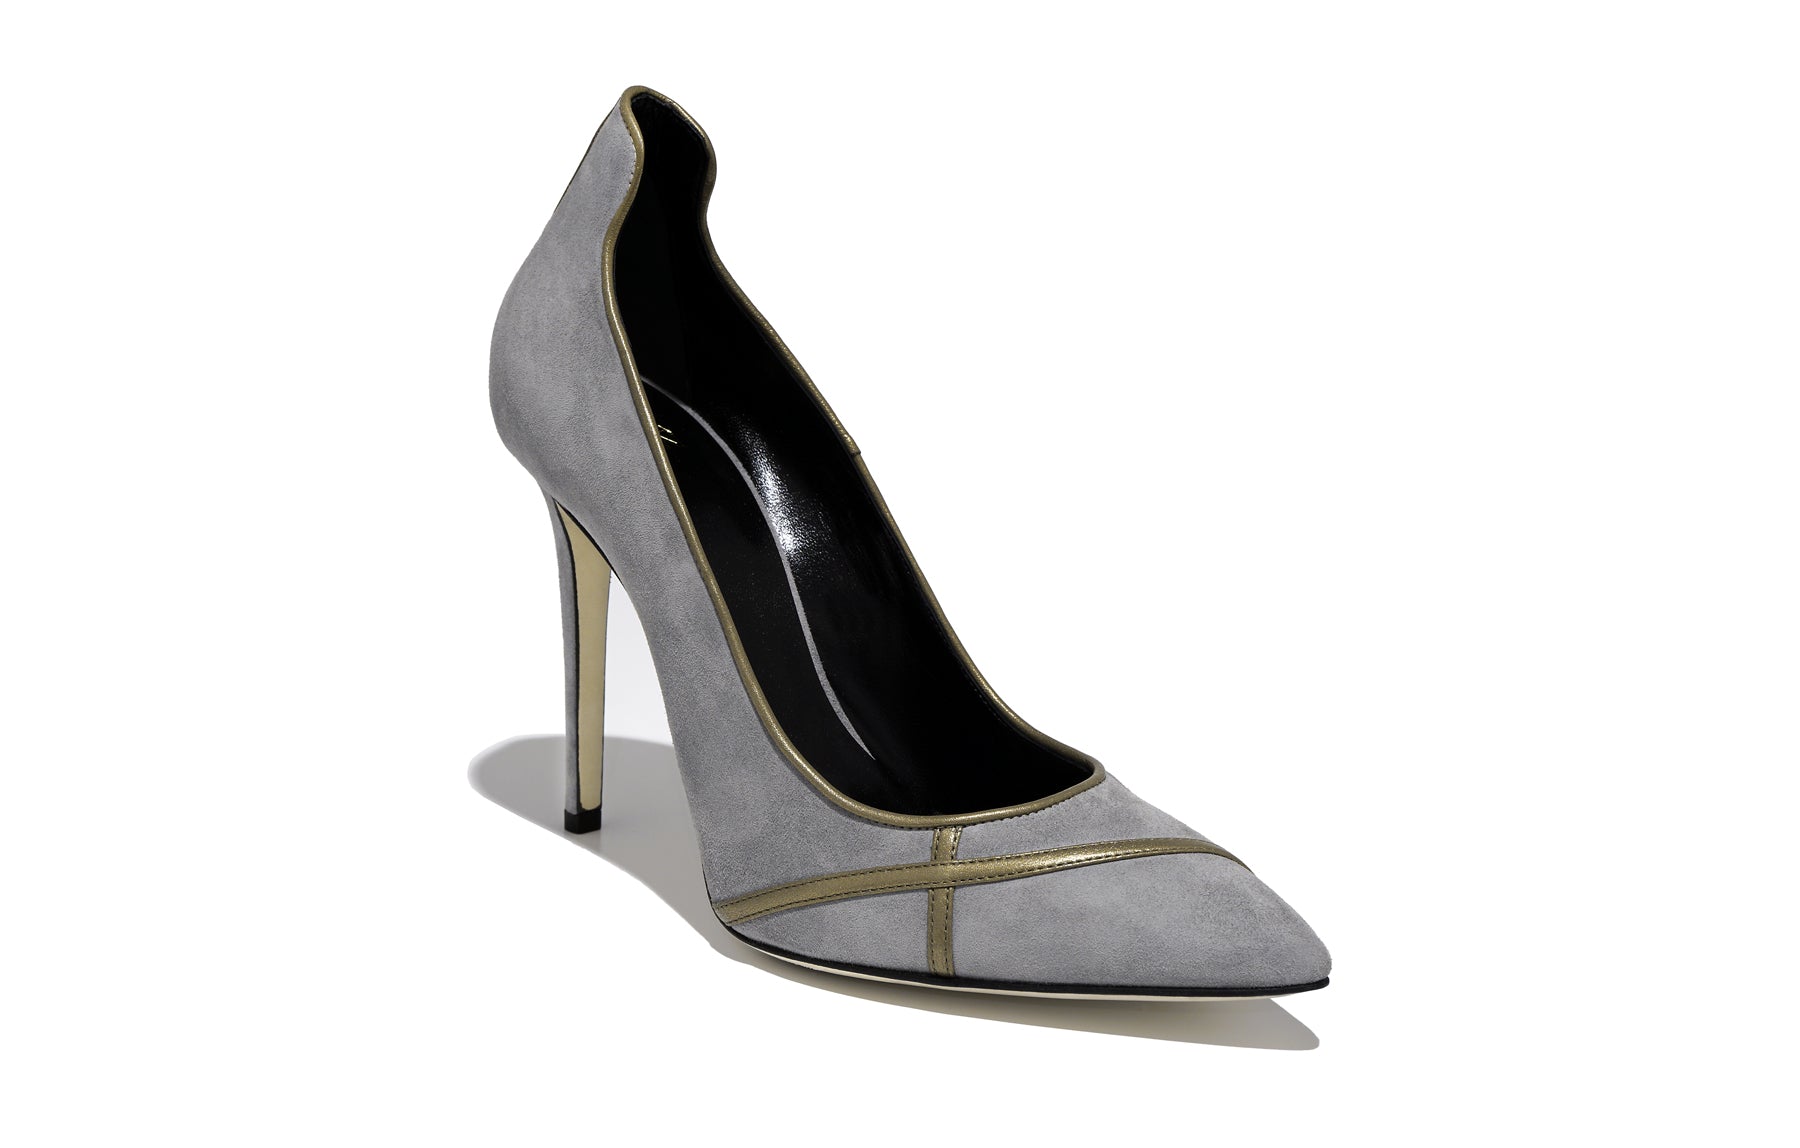 Shoe | PUMP | Isabella Kron Online Store | ISABELLA KRON